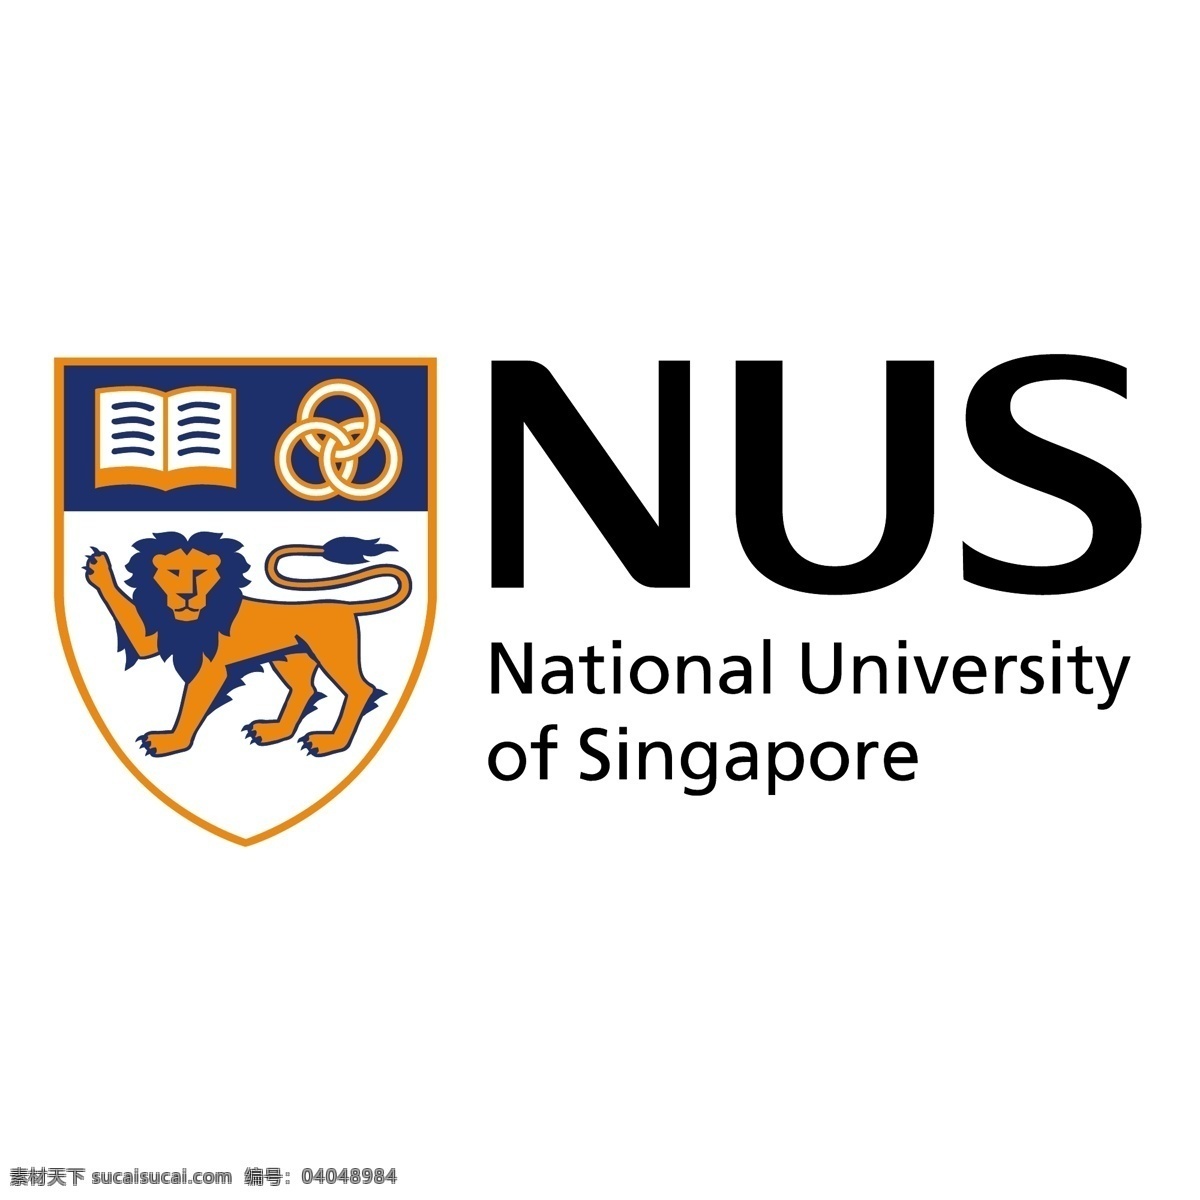 新加坡国立大学 标识 公司 免费 品牌 品牌标识 商标 矢量标志下载 免费矢量标识 矢量 psd源文件 logo设计